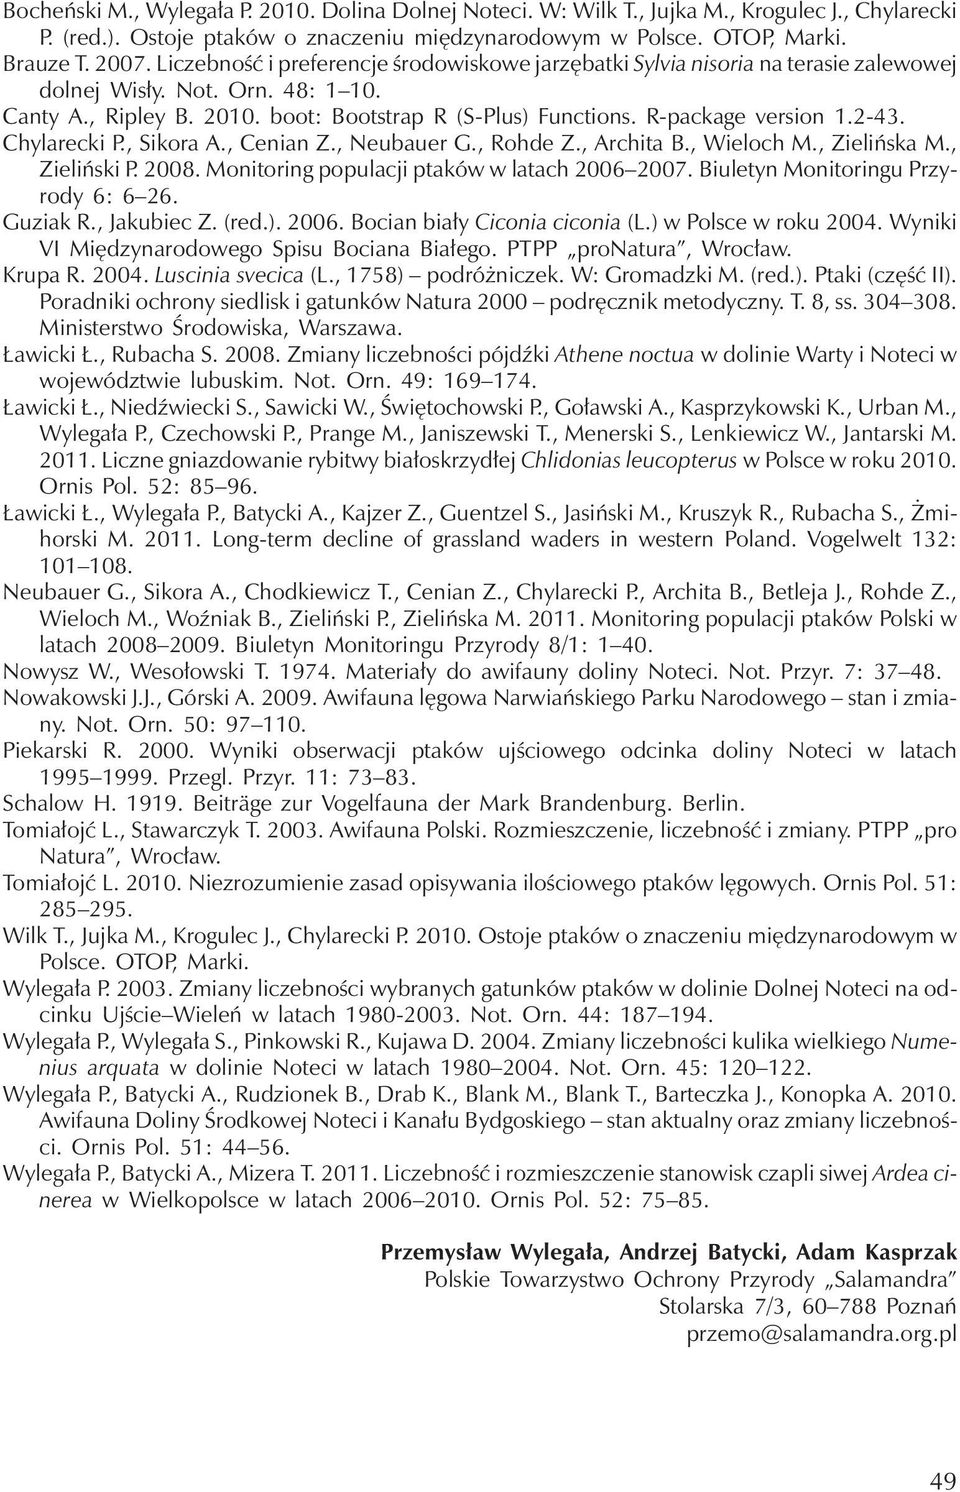 R-package version 1.2-43. Chylarecki P., Sikora A., Cenian Z., Neubauer G., Rohde Z., Archita B., Wieloch M., Zielińska M., Zieliński P. 2008. Monitoring populacji ptaków w latach 2006 2007.